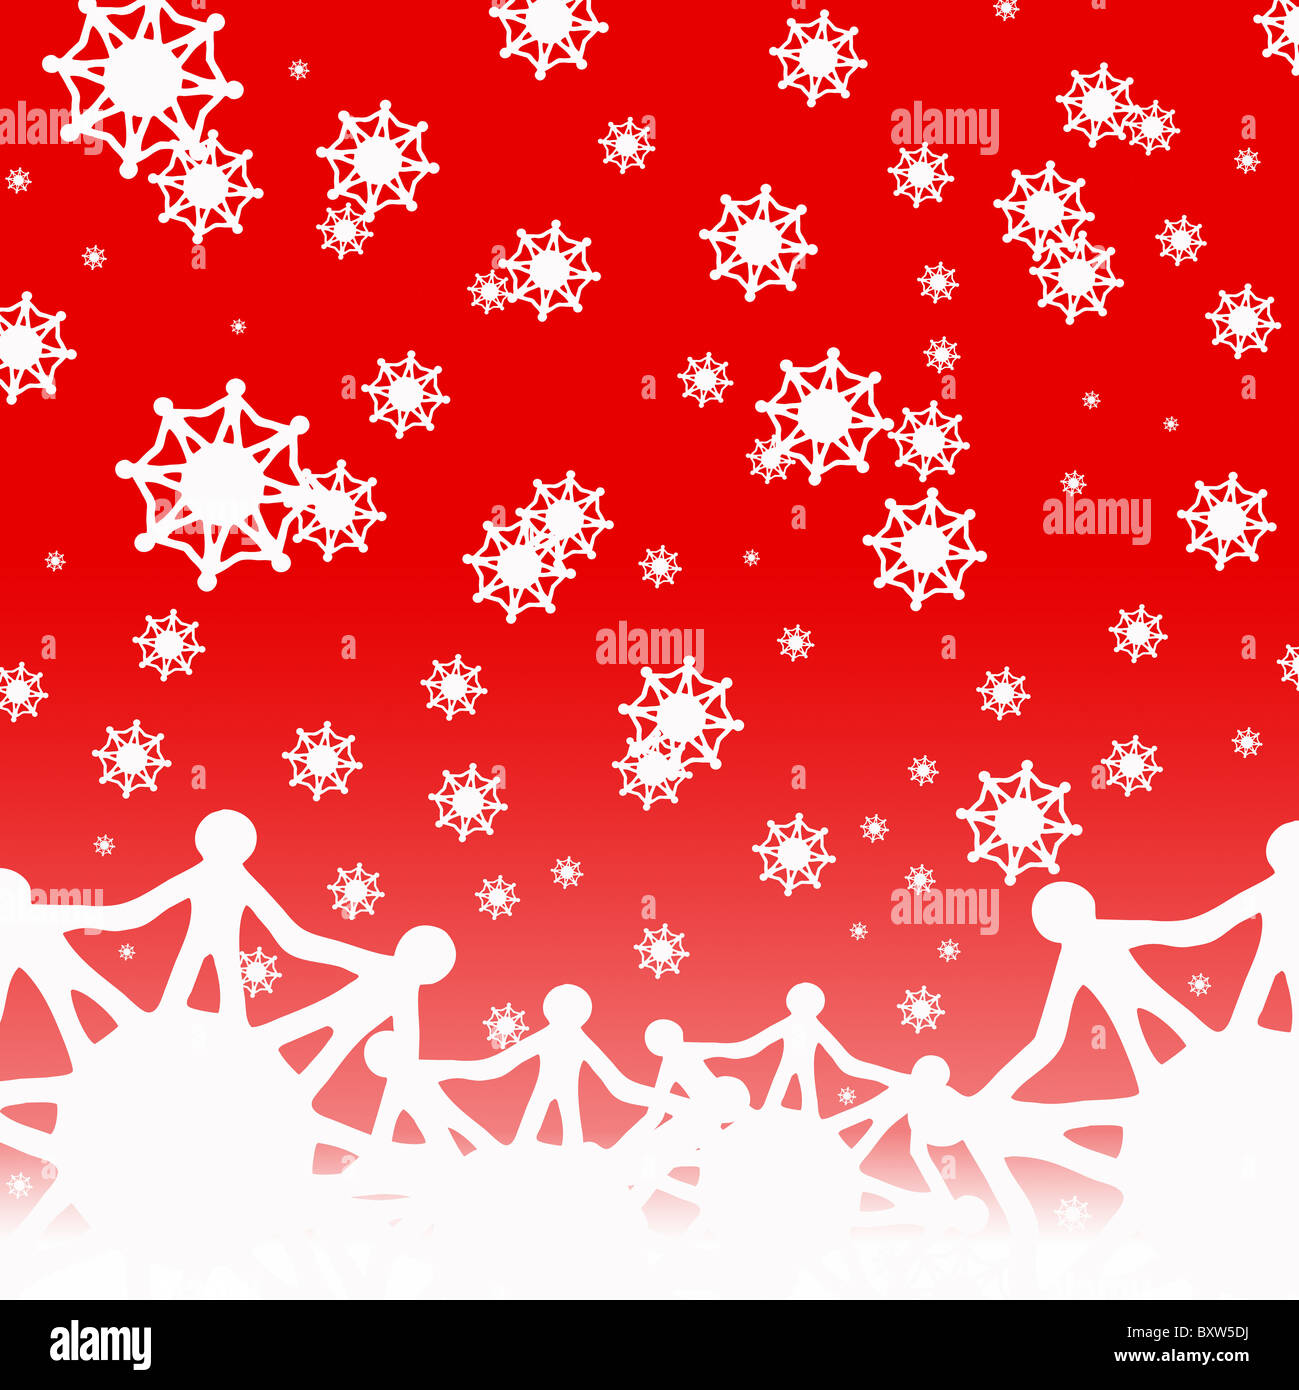 Un copo de nieve mundial concepto de tarjetas de Navidad Foto de stock